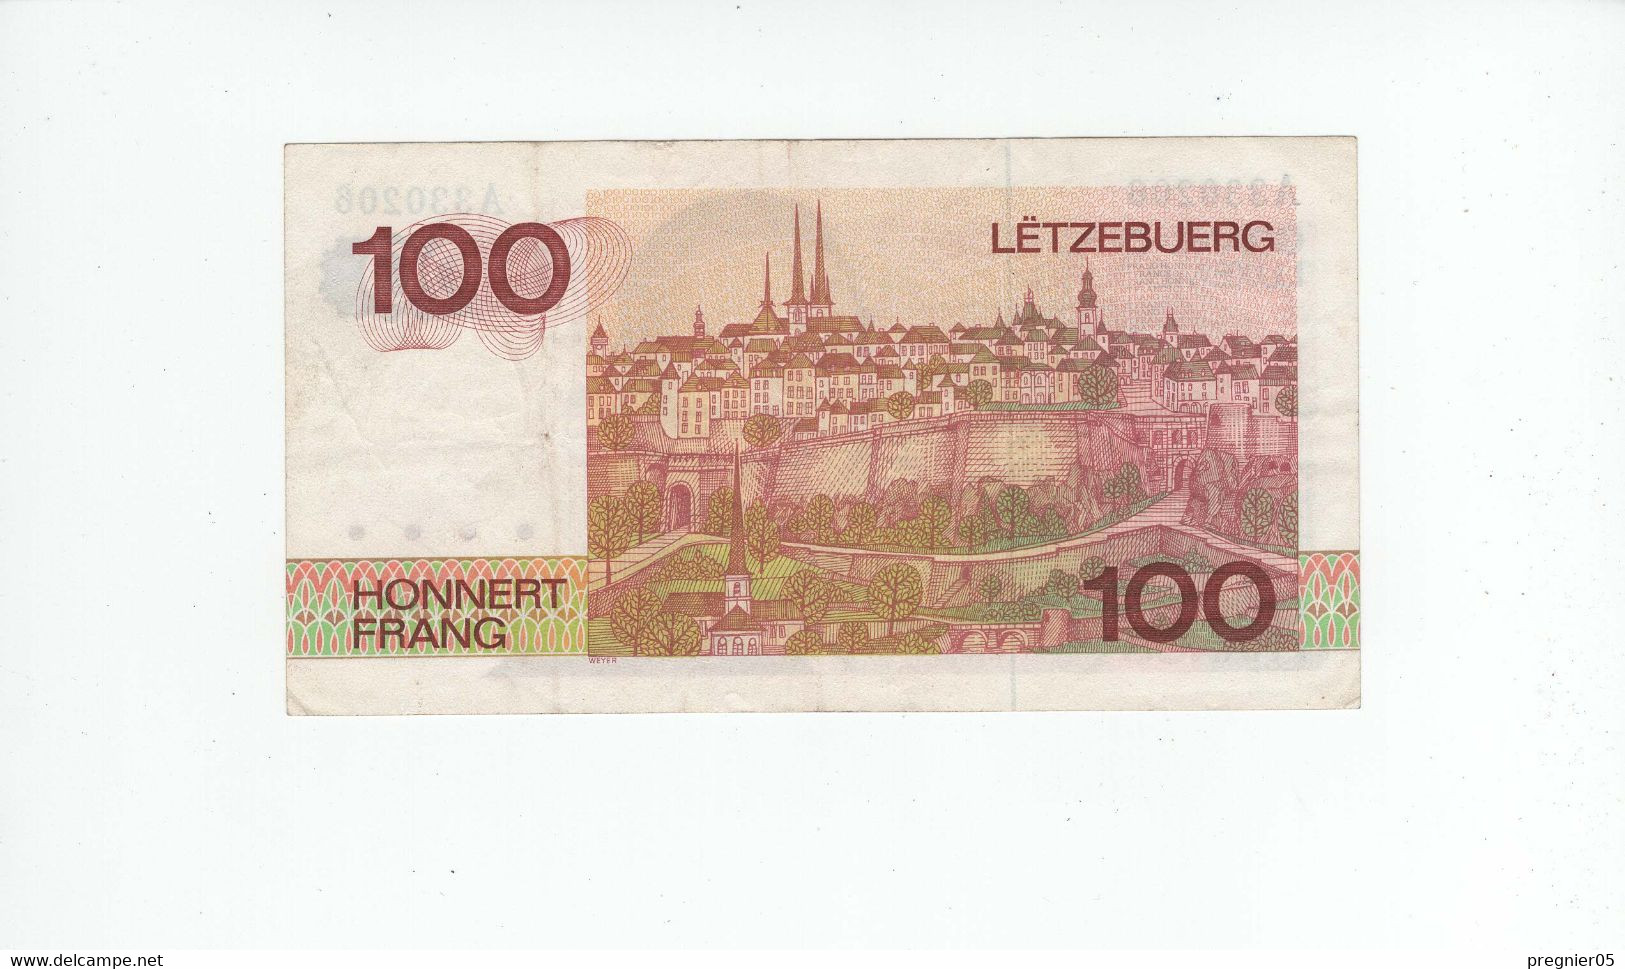 LUXEMBOURG " Baisse De Prix " Billet 100 Francs 1980 SUP P.57-A N° 330206 - Luxembourg